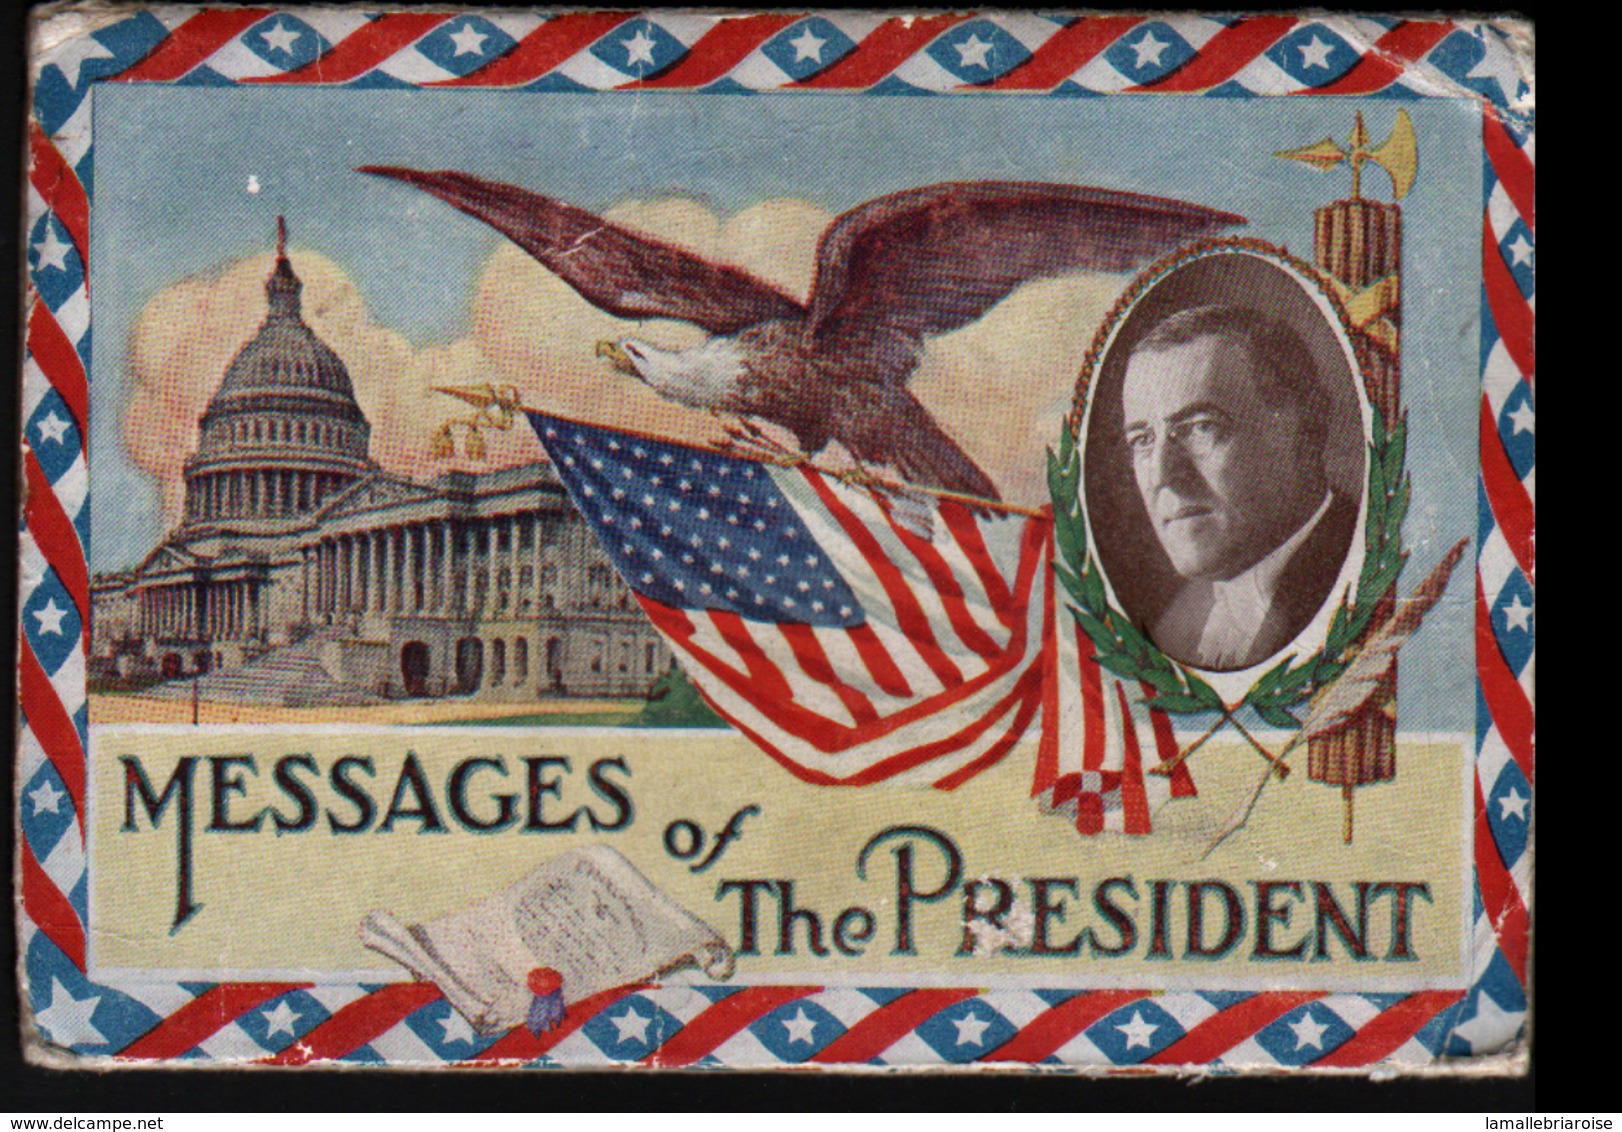 Etats-Unis D'Amerique, Messages Of The President, - Presidents